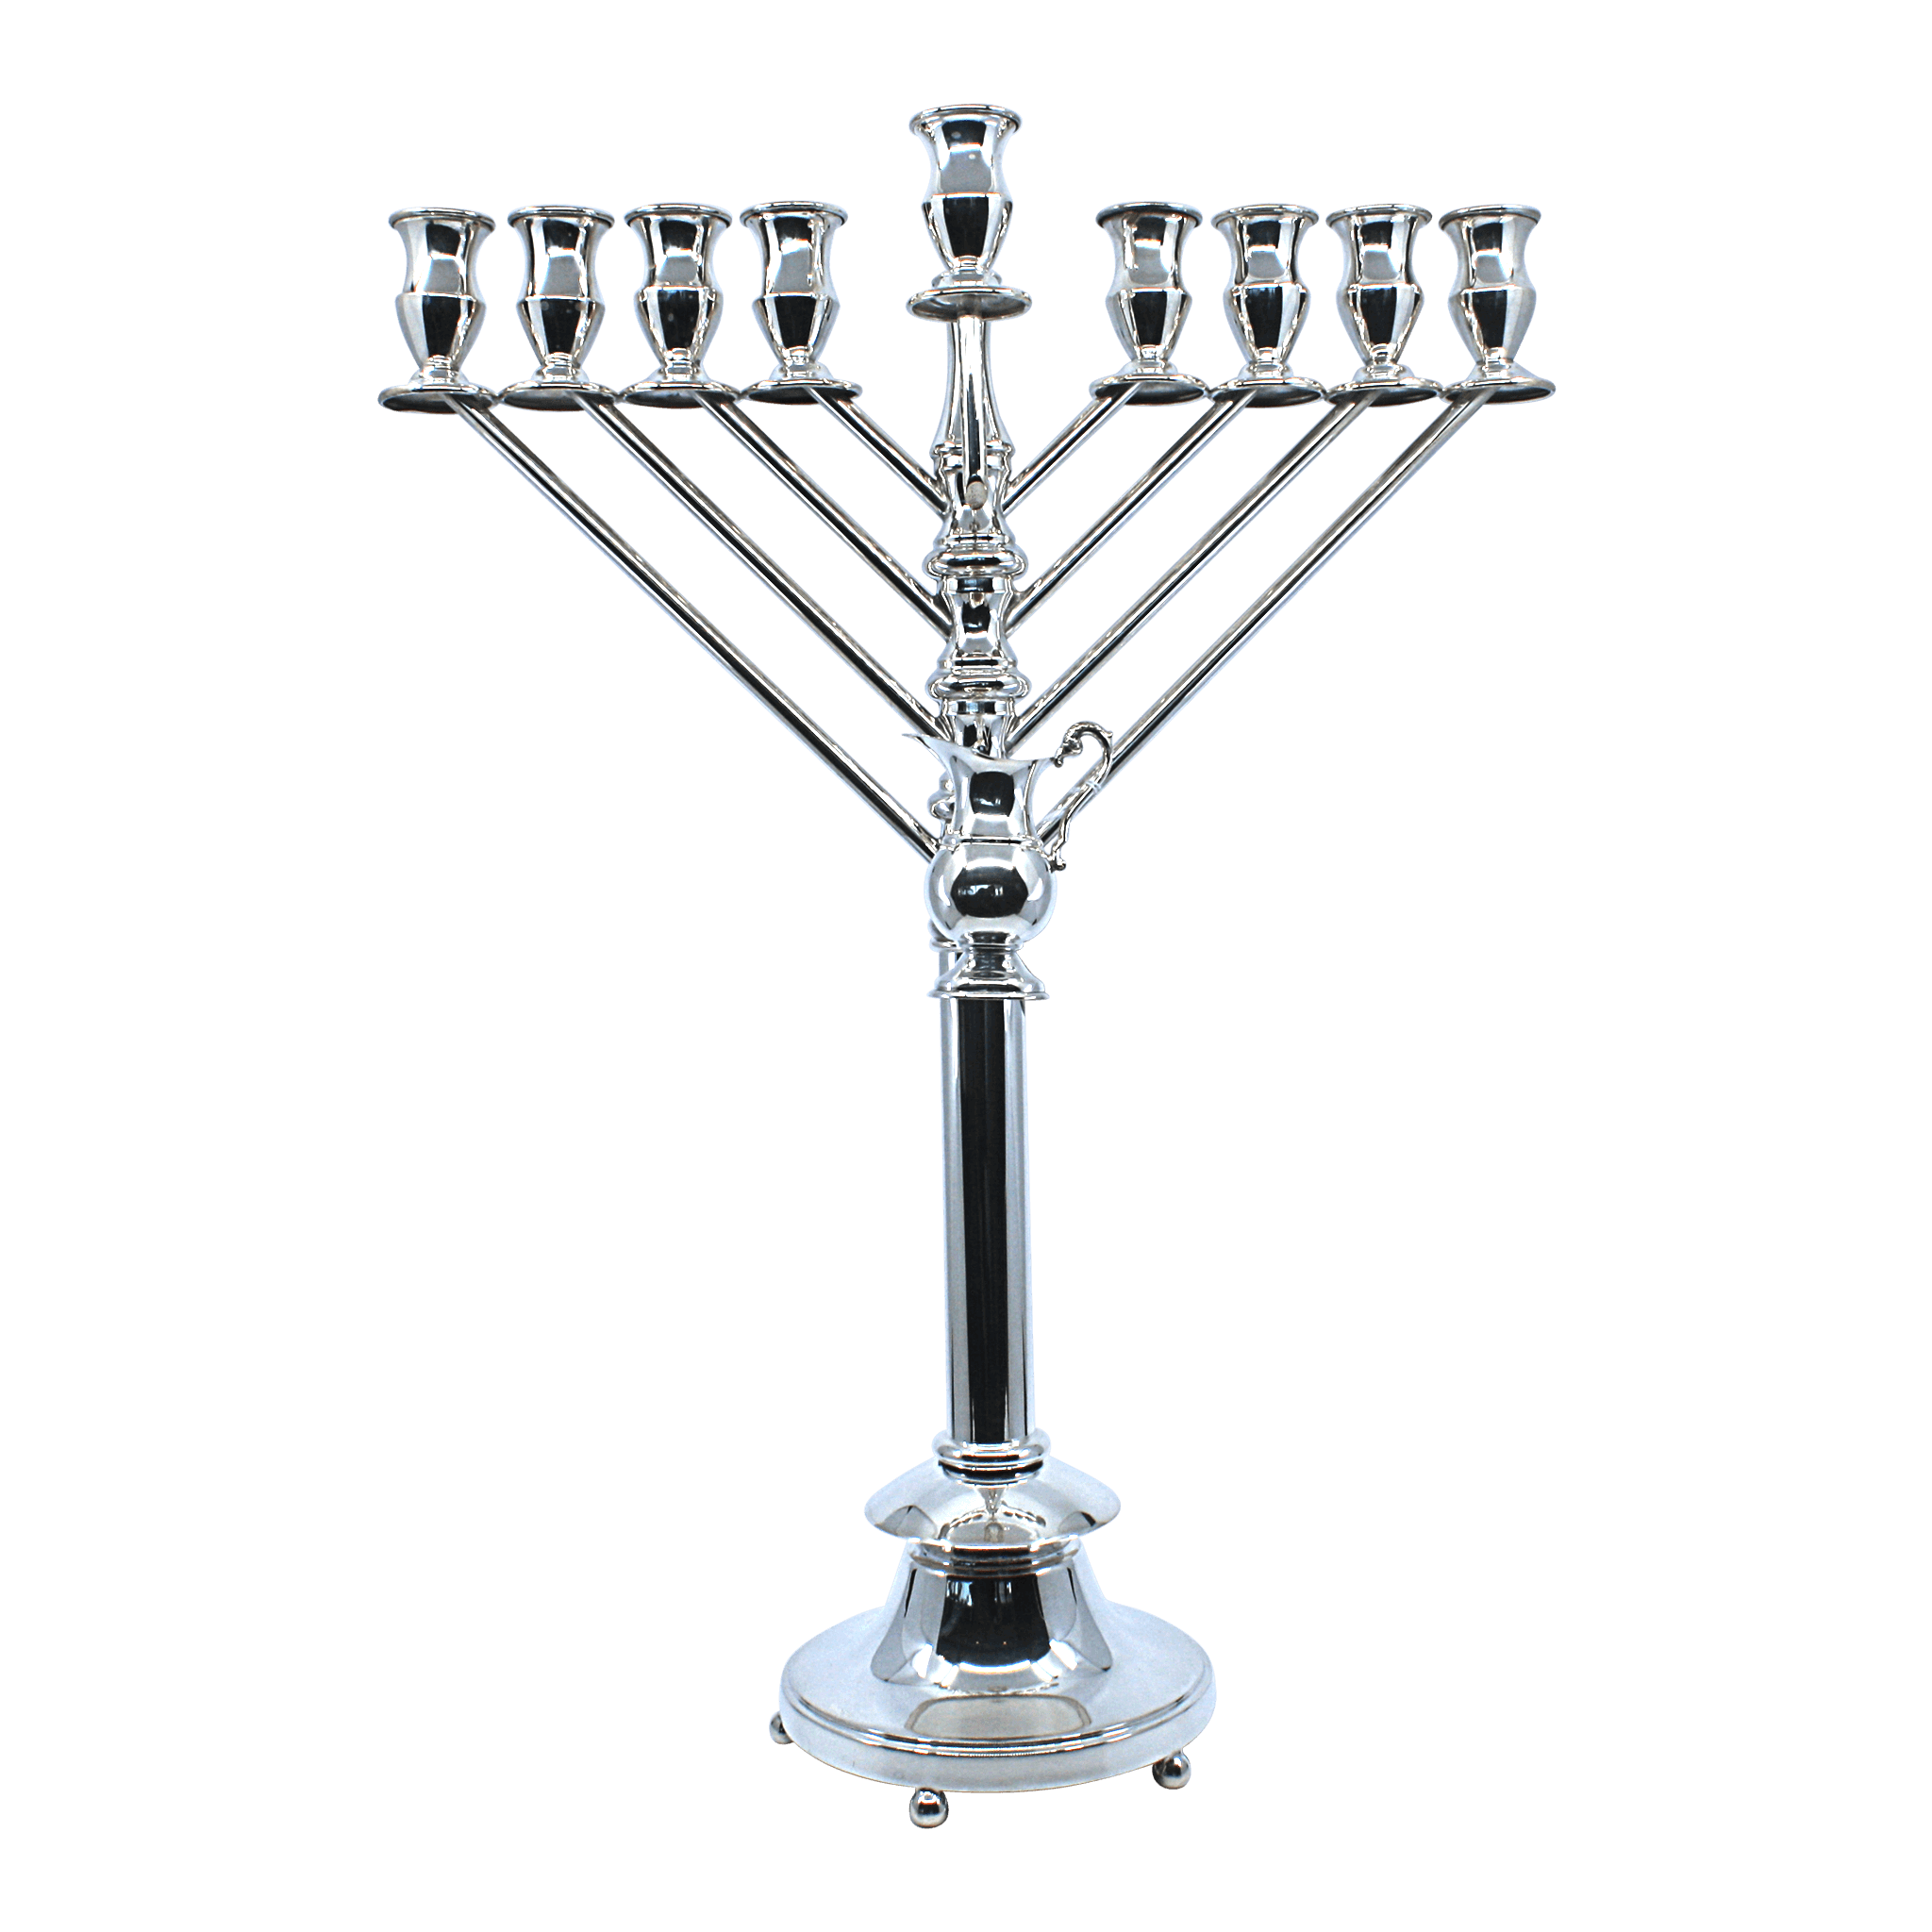 Chabad Silver Menorah for Hanukkah - Piece By Zion Hadad